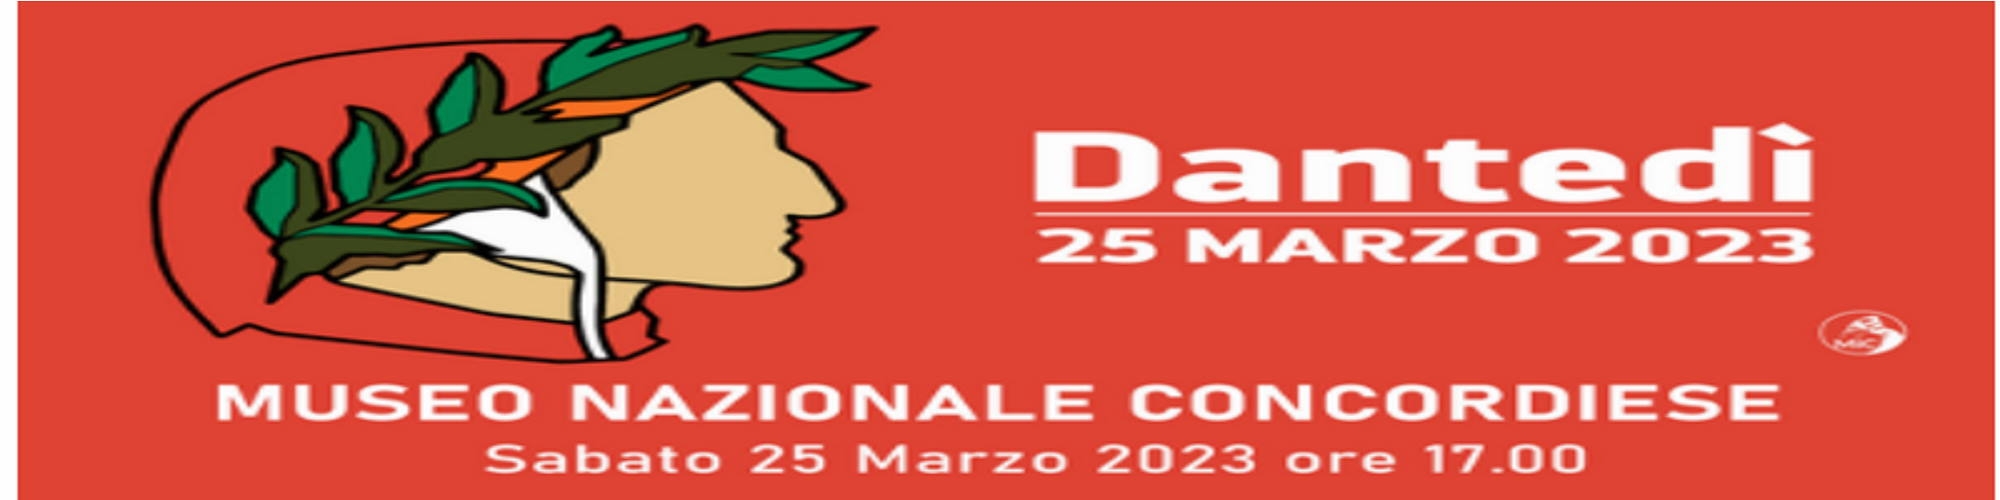 Immagine Giornata nazionale dedicata a Dante Alighieri